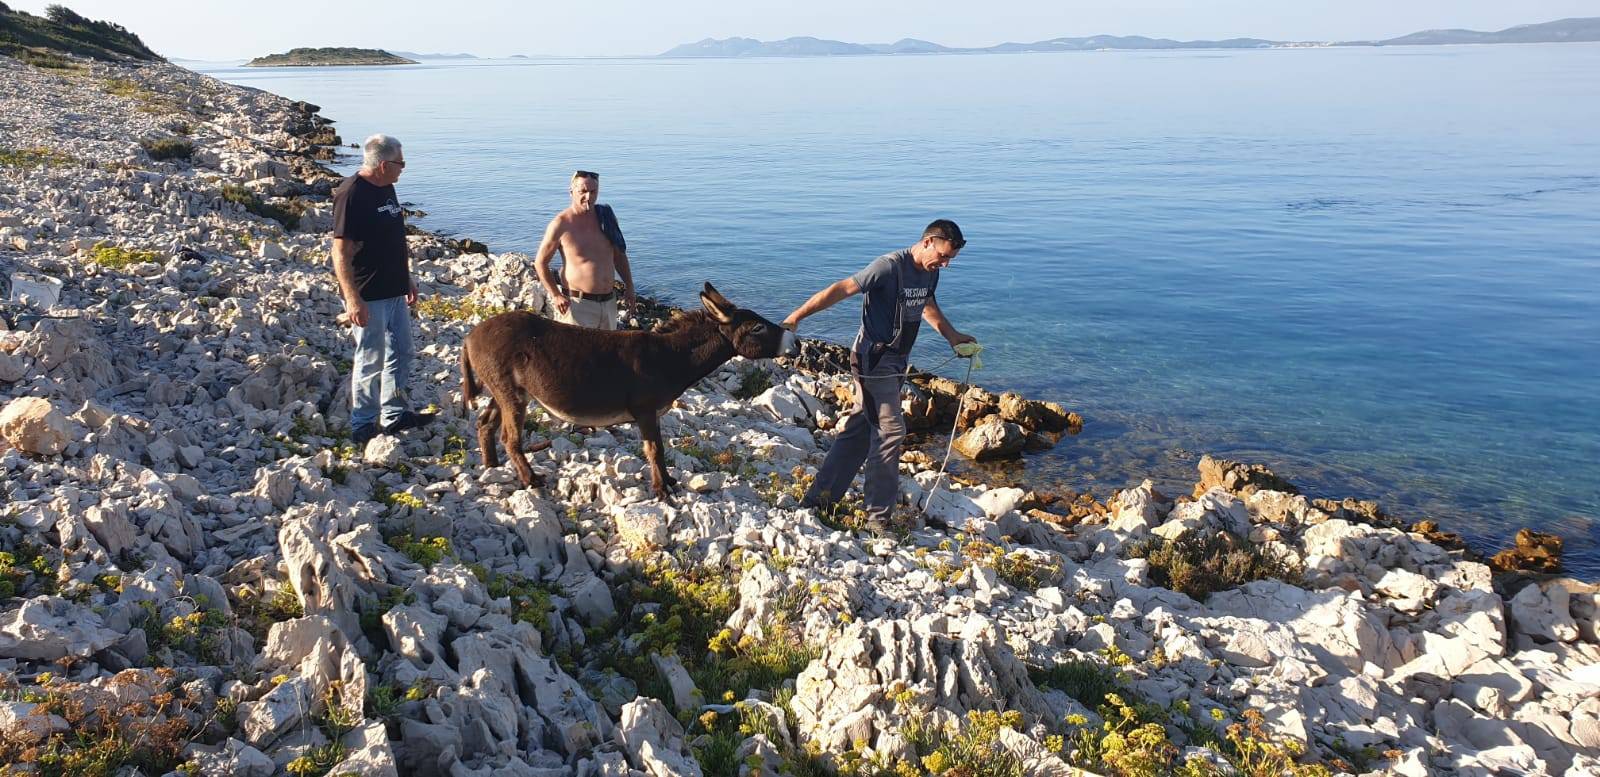 Na otočiću kraj Zadra našli 4 magarca: 'Čini se da su parovi'